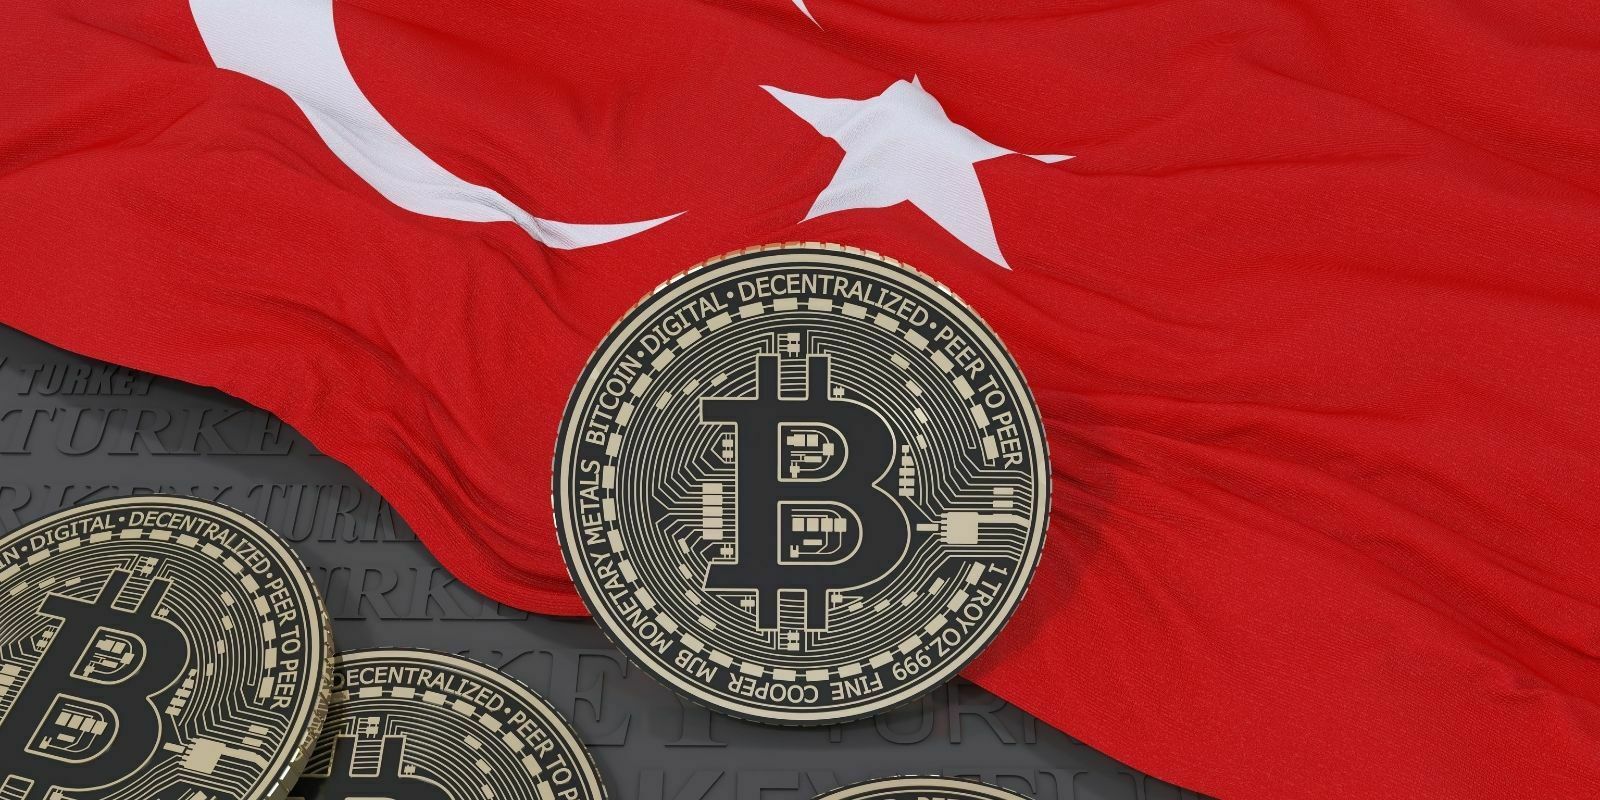 Les recherches Google pour le Bitcoin (BTC) explosent en Turquie après la chute de la monnaie locale